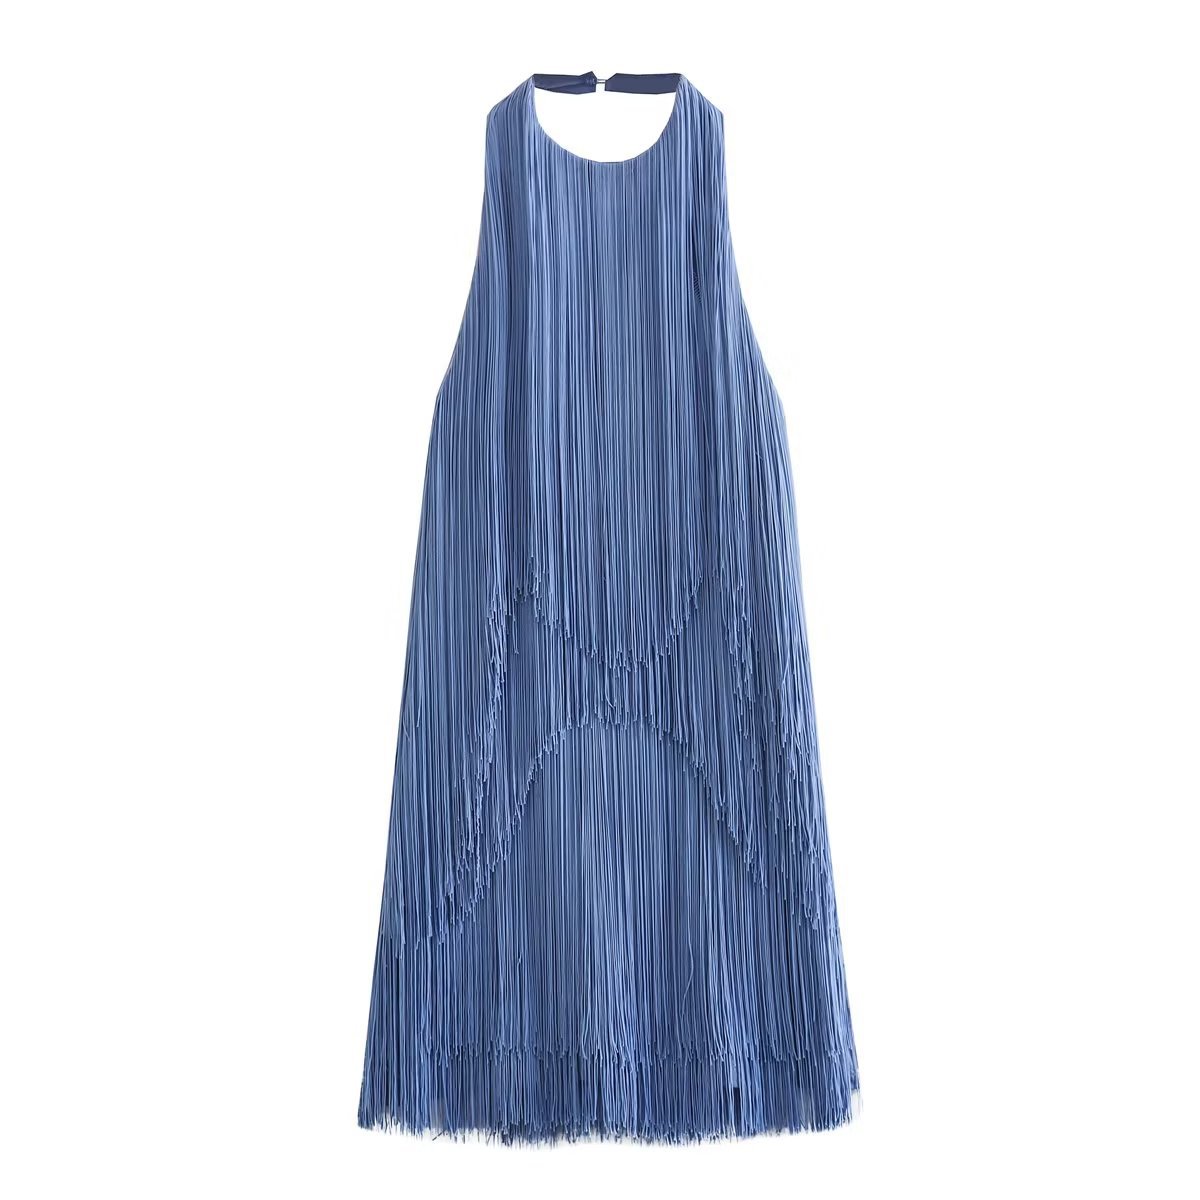 Women's Summer Temperament Fashion Halter Sleeveless Fringe Skirt Dress